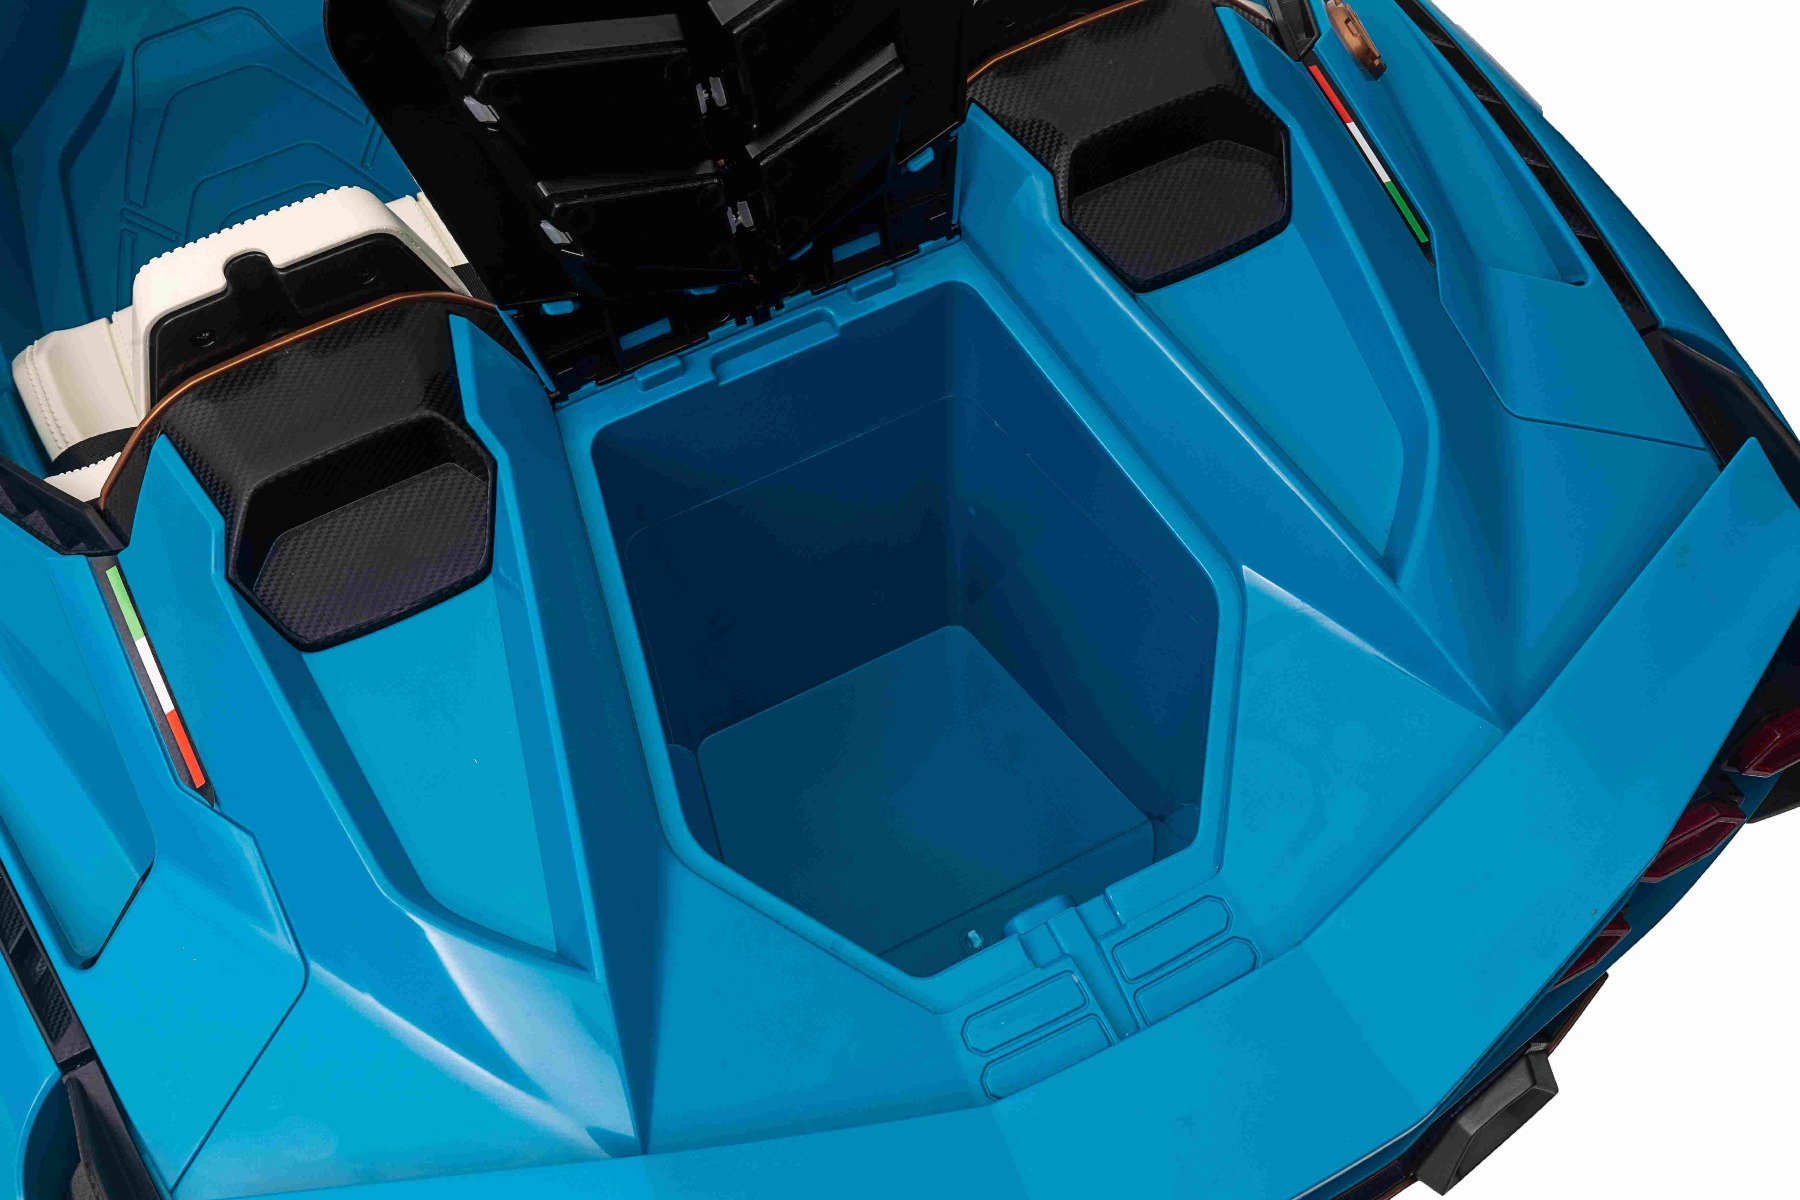 Elektro-Rutschauto Lamborghini Sian 4X4, blau, 12 V, 2,4 GHz-Fernbedienung,  USB-/AUX-Eingang, Bluetooth, Federung, vertikal öffnende Türen, weiche  EVA-Räder, LED-Leuchten, ORIGINAL-Lizenz